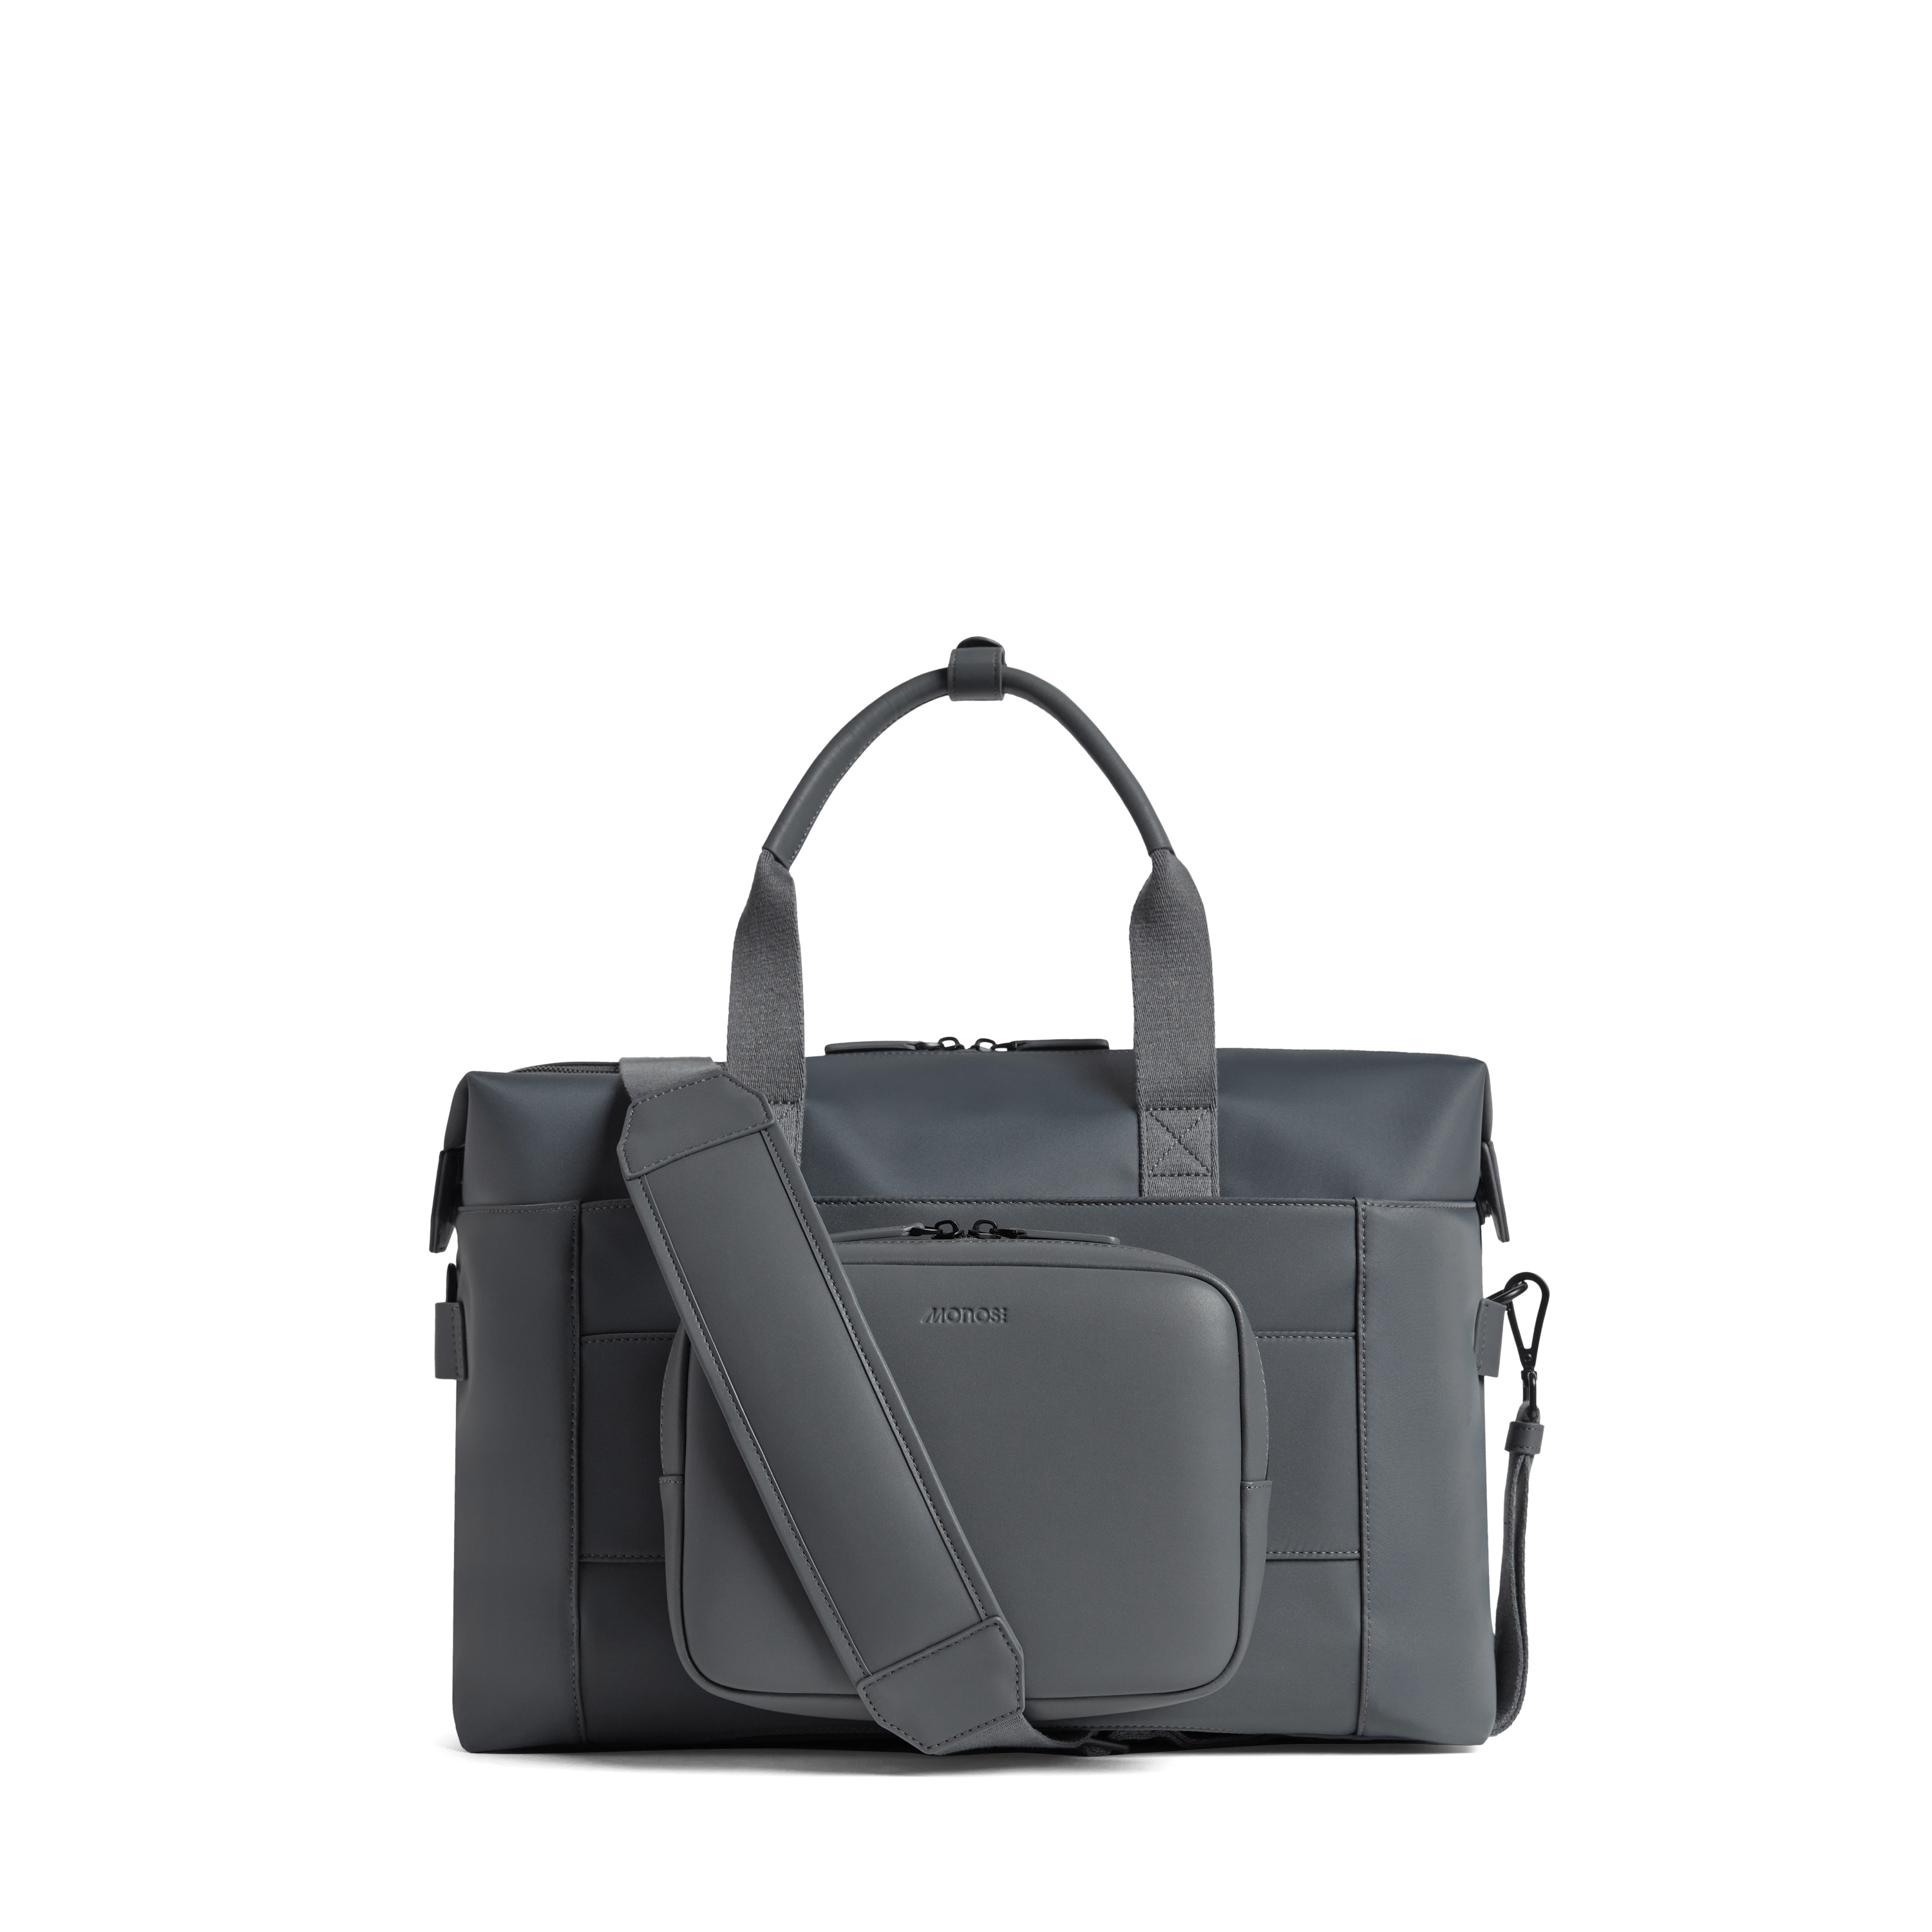 Metro Duffel | Monos Australia Luggage & Bags